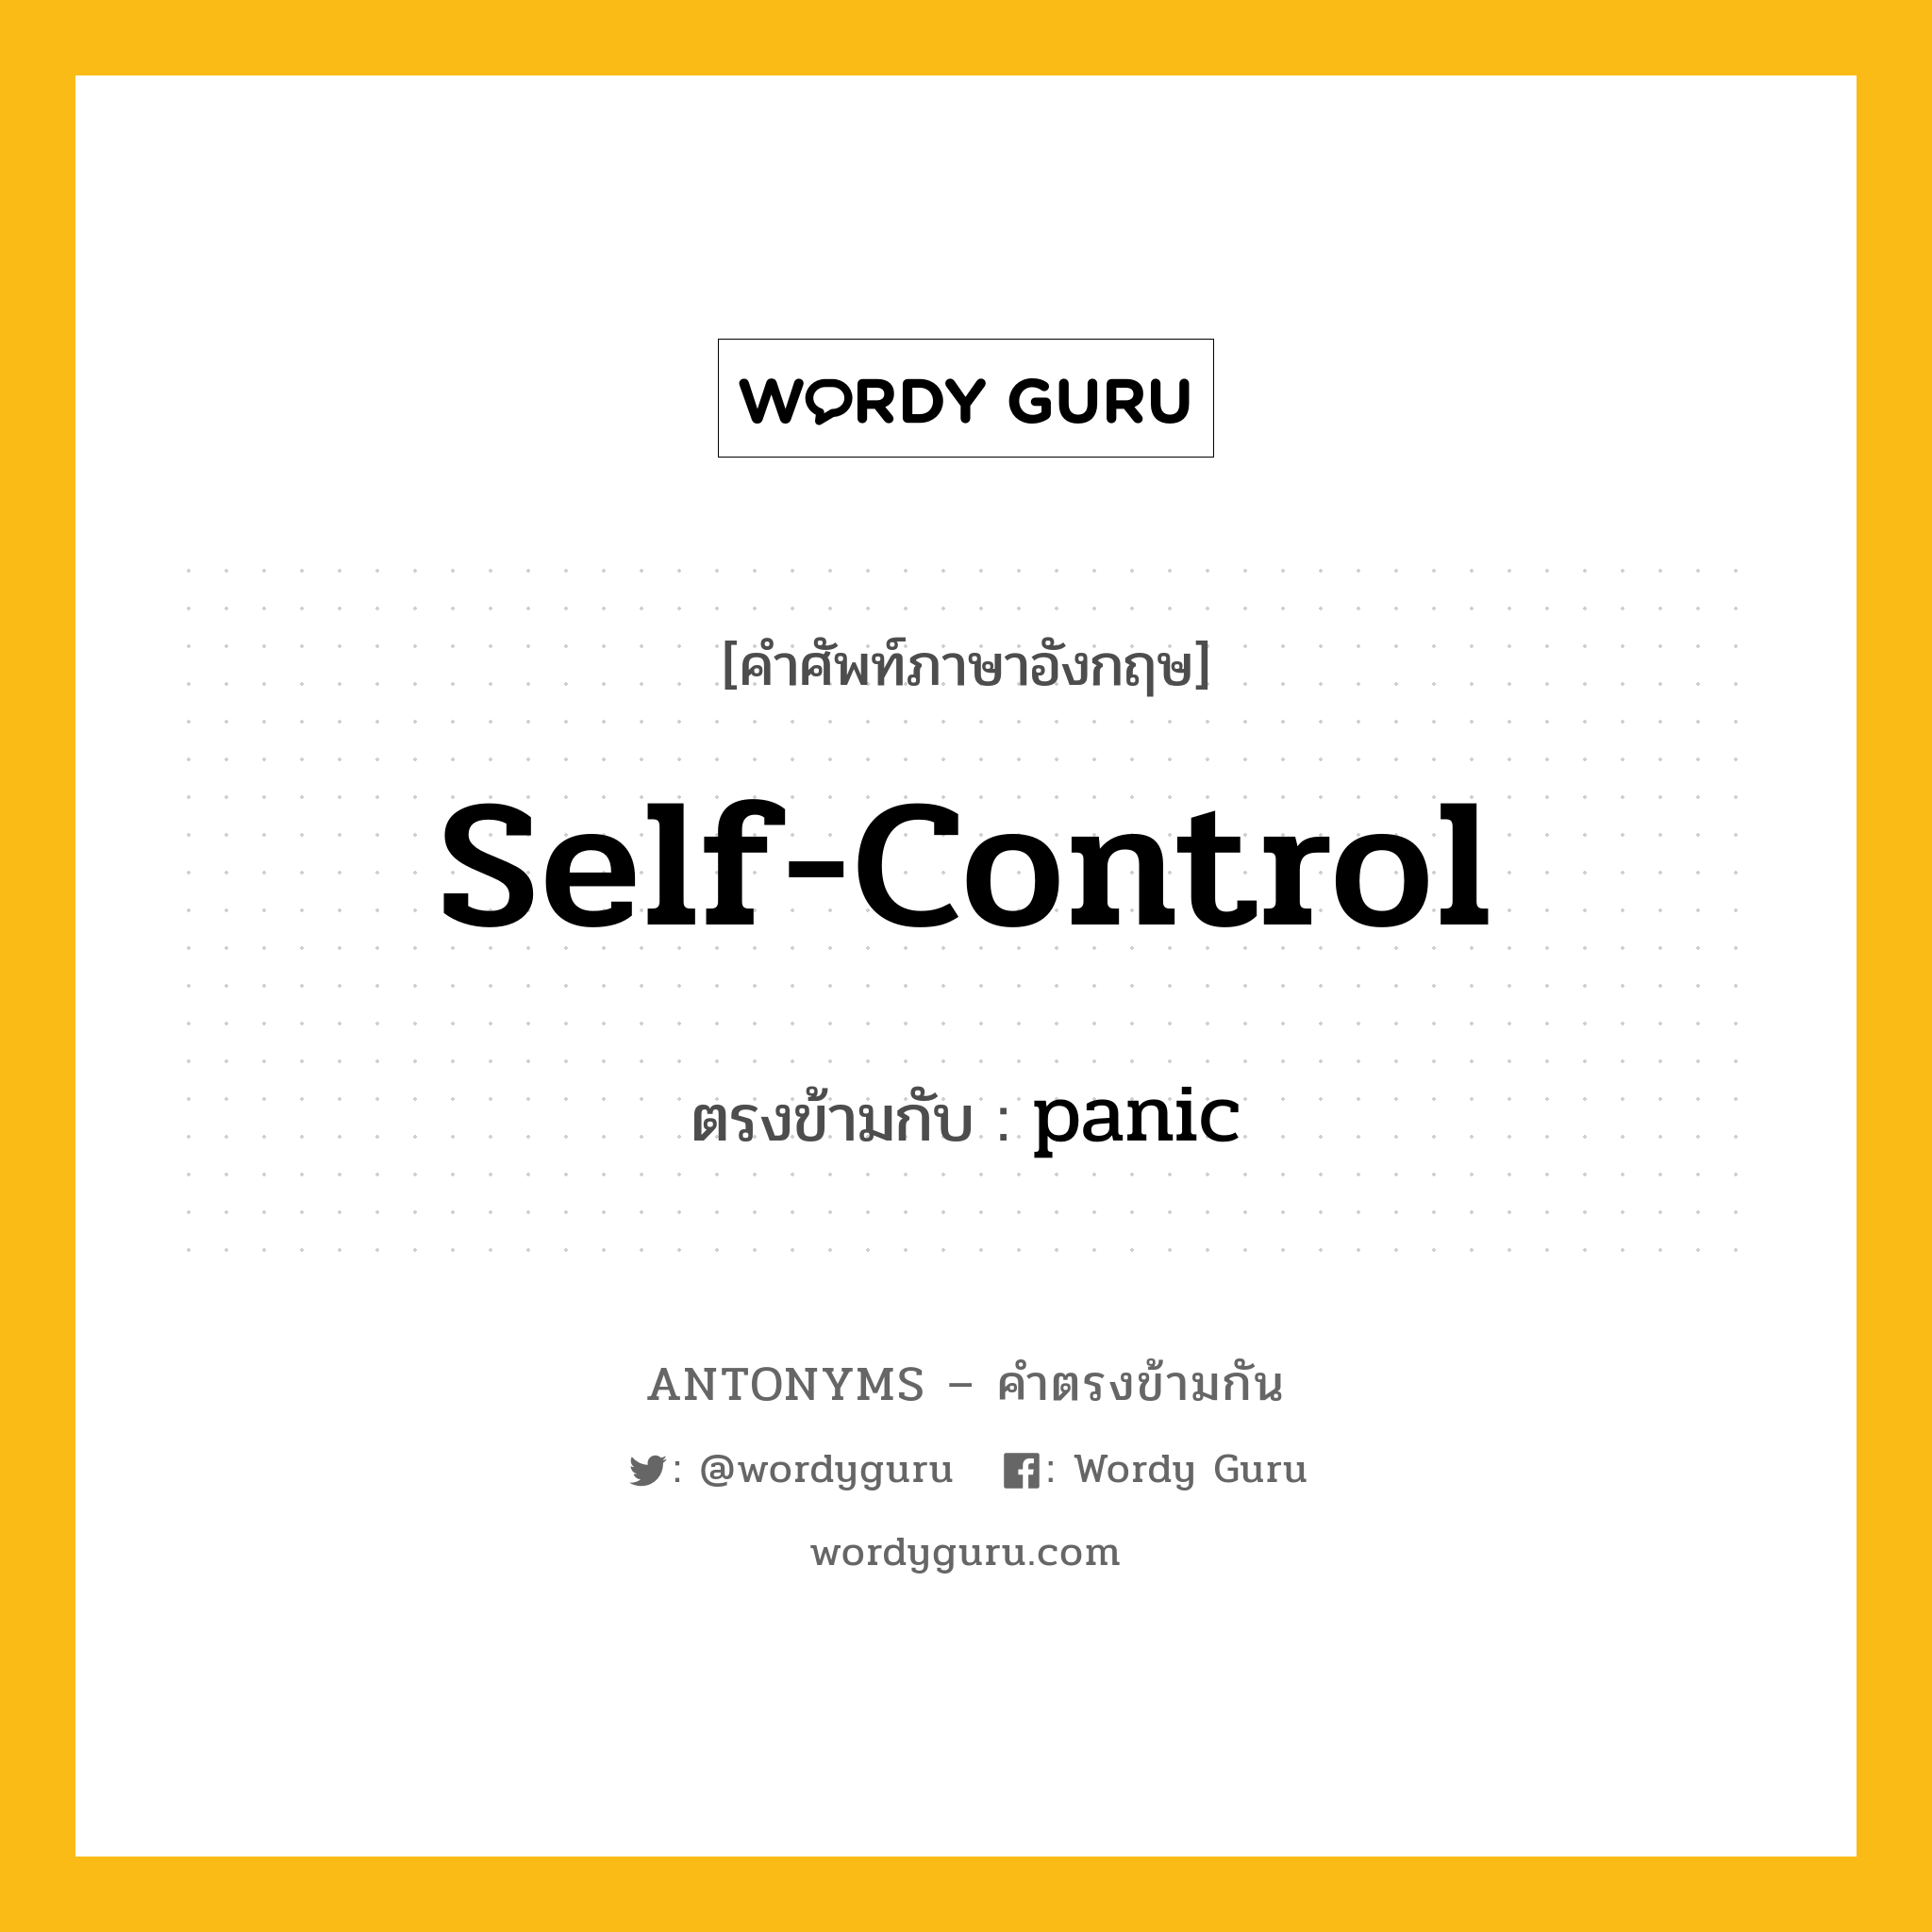 self-control เป็นคำตรงข้ามกับคำไหนบ้าง?, คำศัพท์ภาษาอังกฤษที่มีความหมายตรงข้ามกัน self-control ตรงข้ามกับ panic หมวด panic